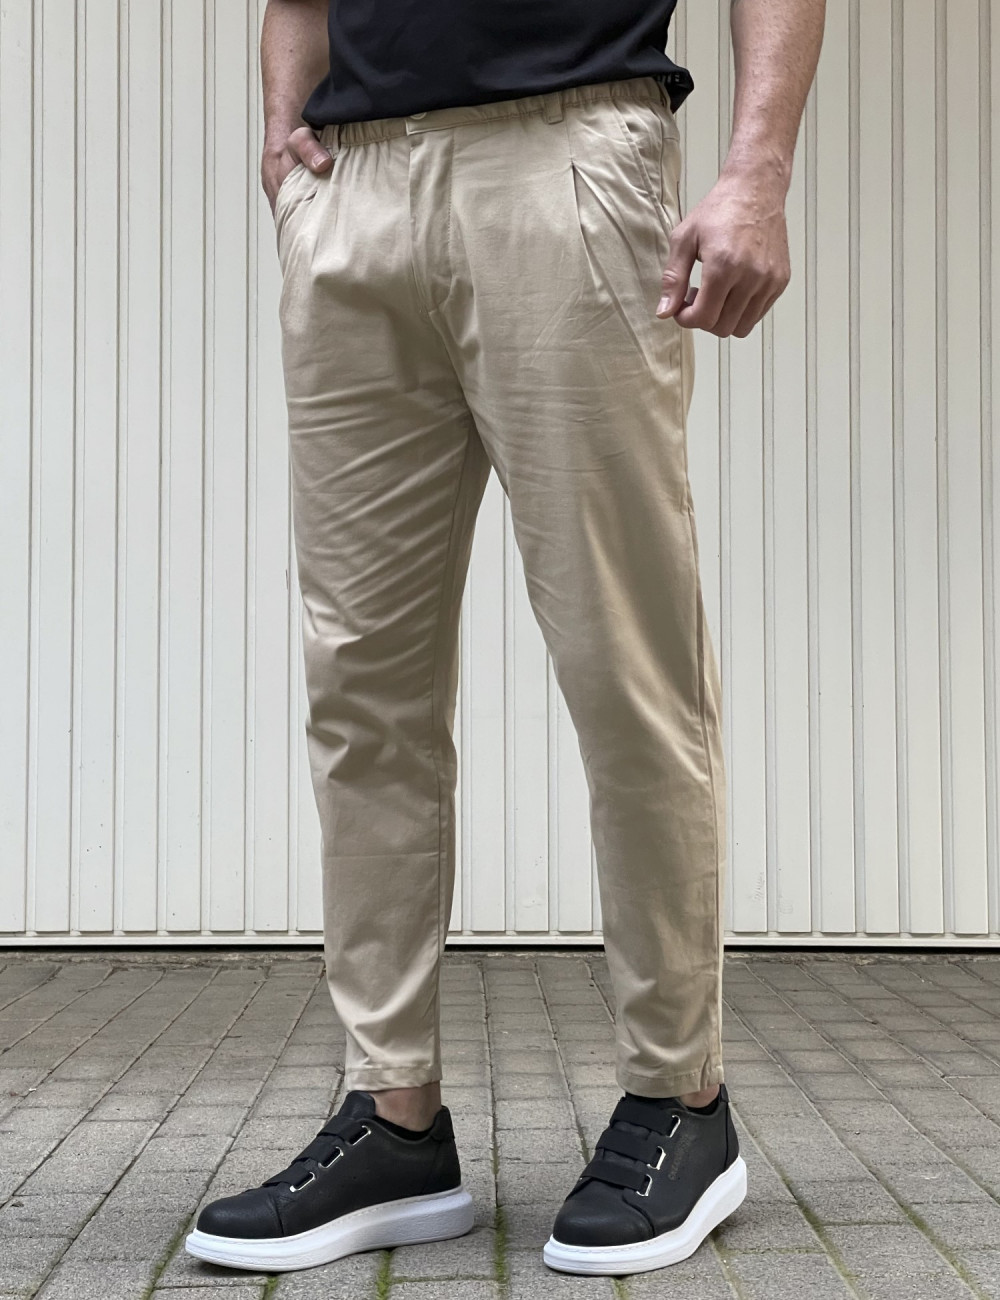 Ανδρικό μπεζ υφασμάτινο παντελόνι με πιέτα PNT5002B